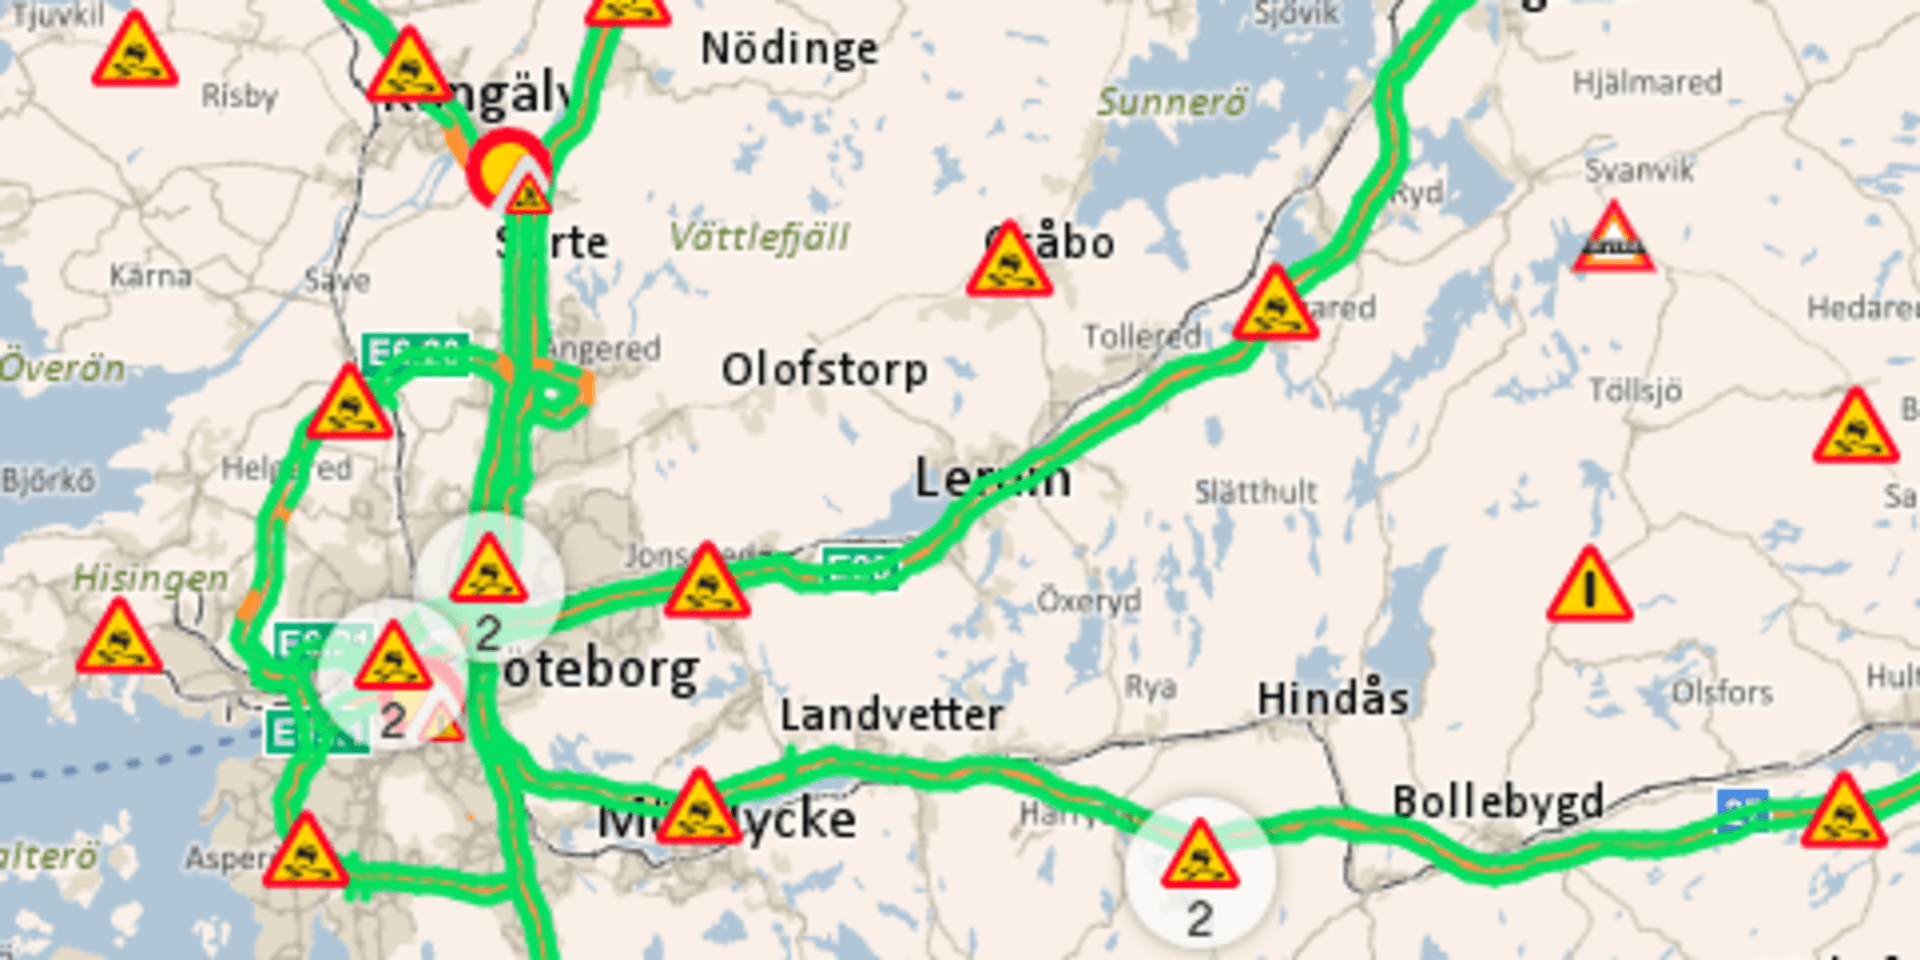 Vid 14.30-tiden varnade Trafikverket via hemsidan trafiken.nu för halt väglag i hela Göteborgsområdet. (Trafiken.nu är samarbete mellan Trafikverket, Göteborgs Stad och Västtrafik.)